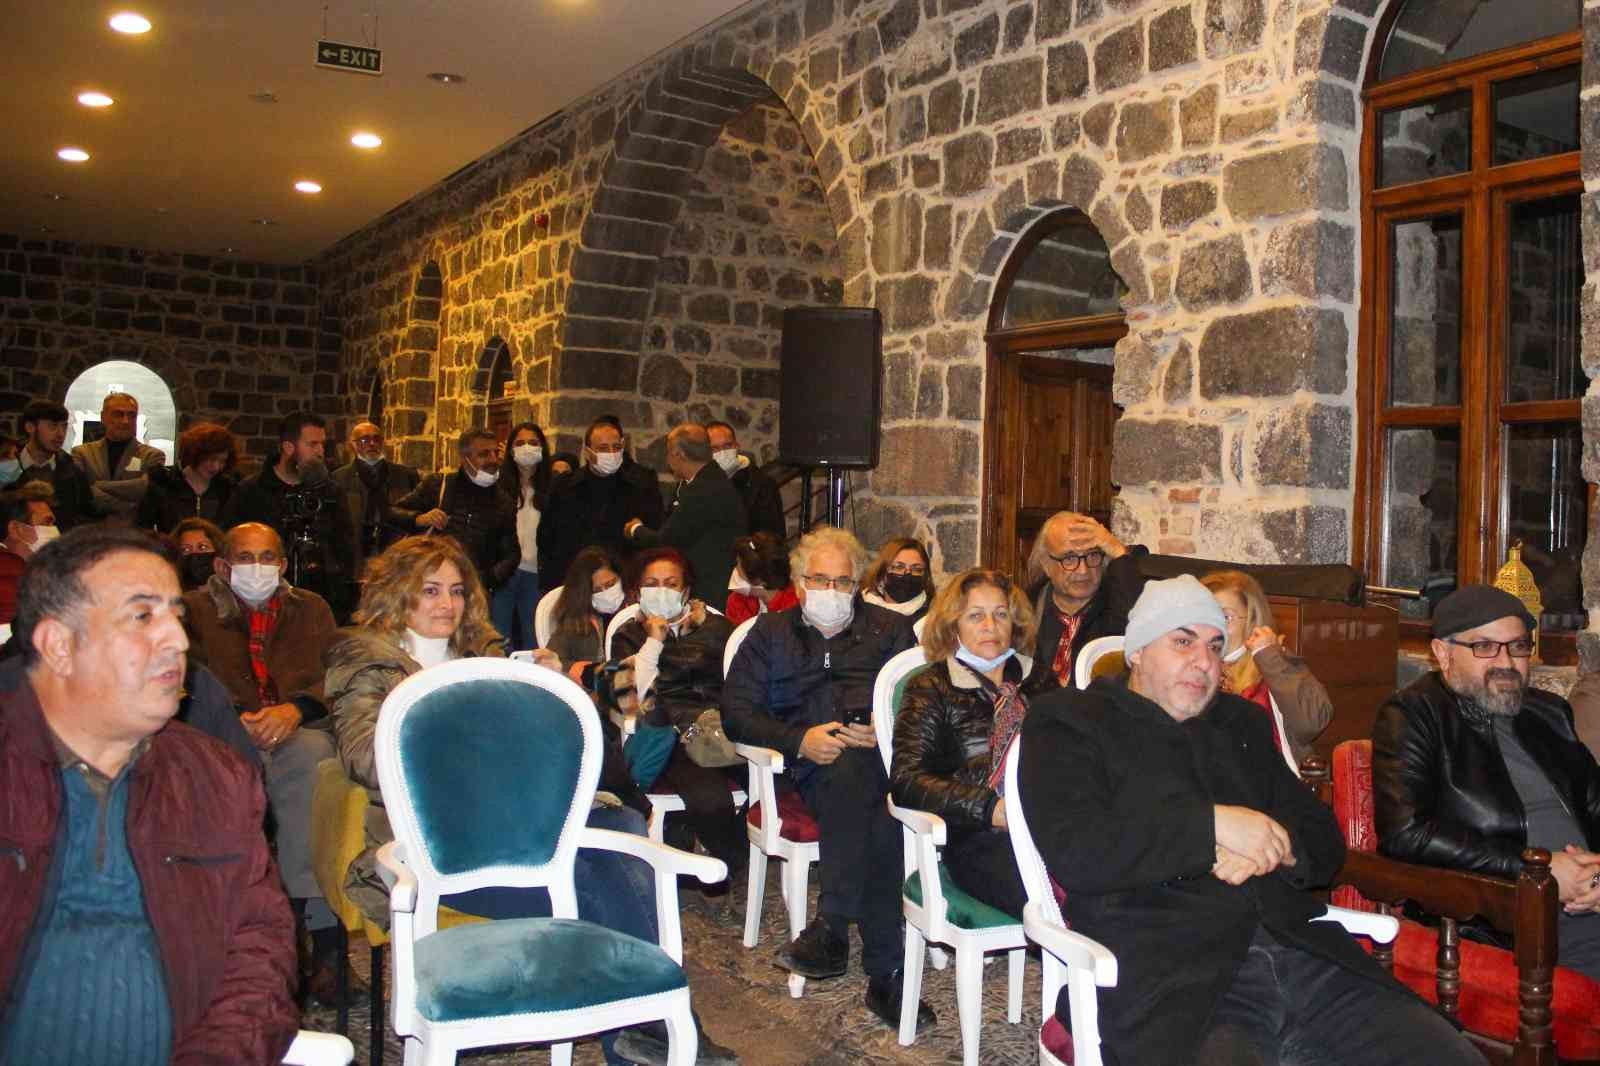 Diyarbakır’da kitap severler kitap mezadında buluştu #diyarbakir